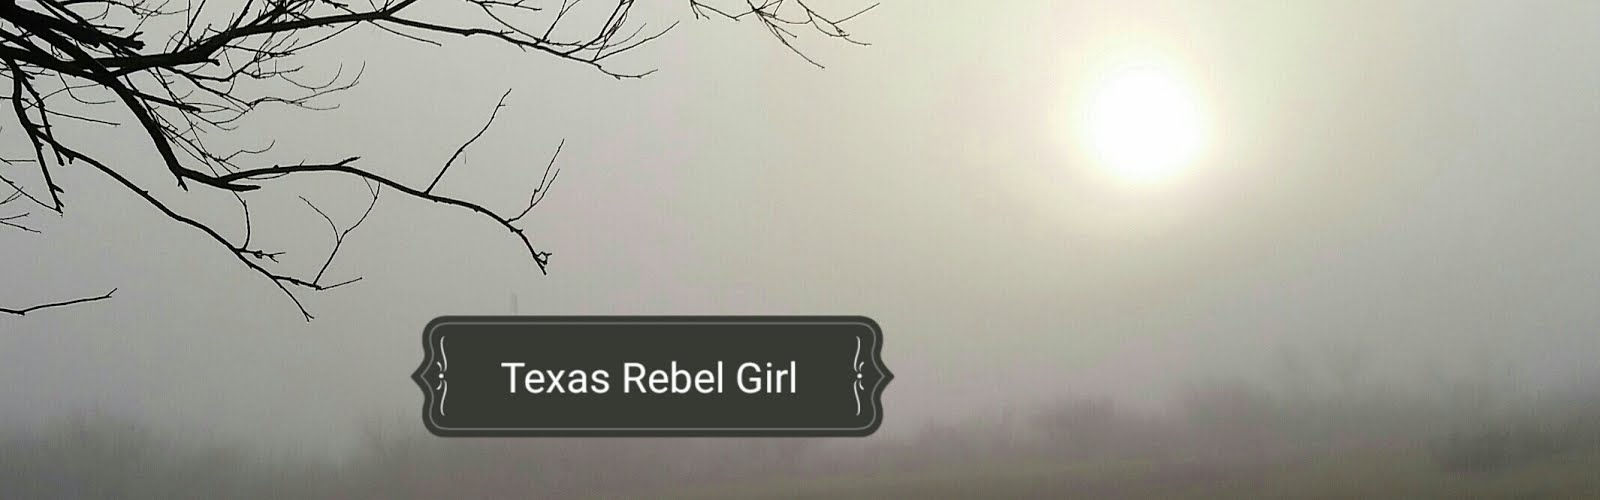 Texas Rebel Girl